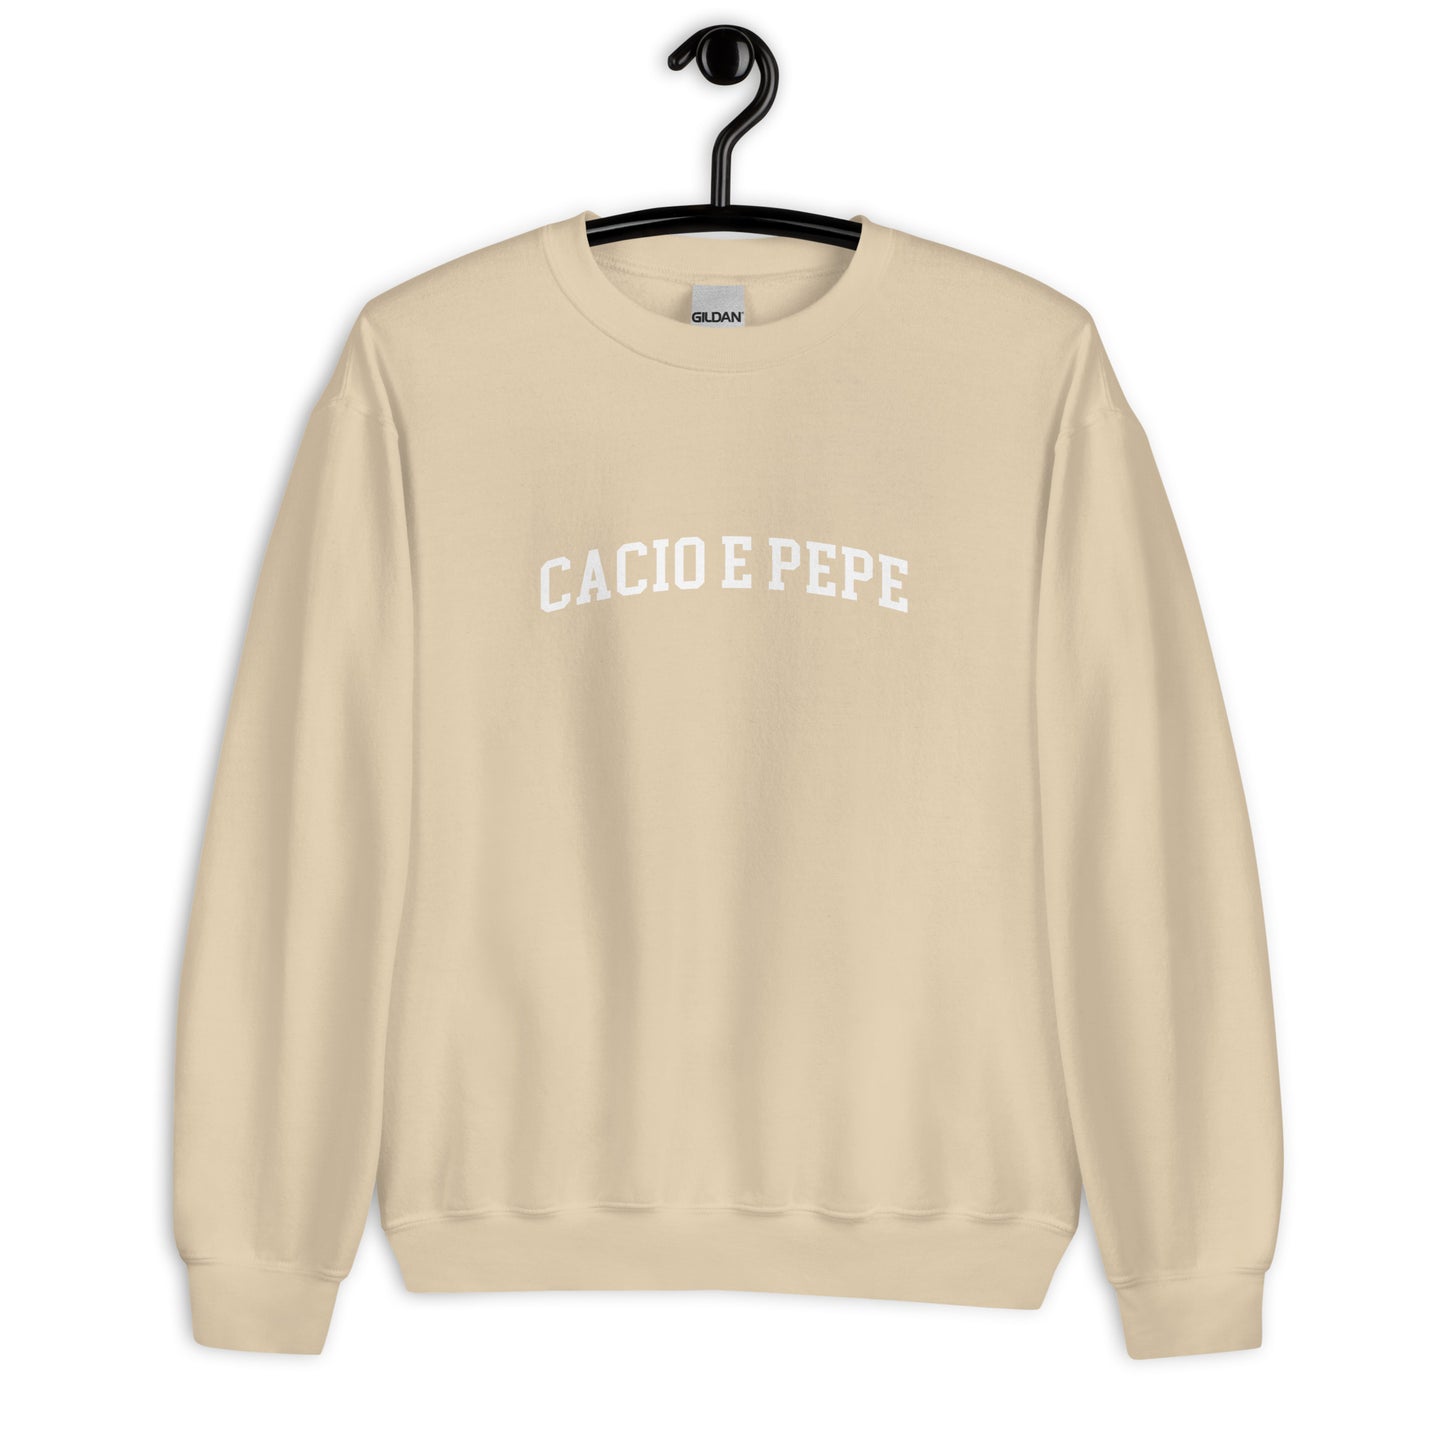 Cacio E Pepe Sweatshirt - Arched Font